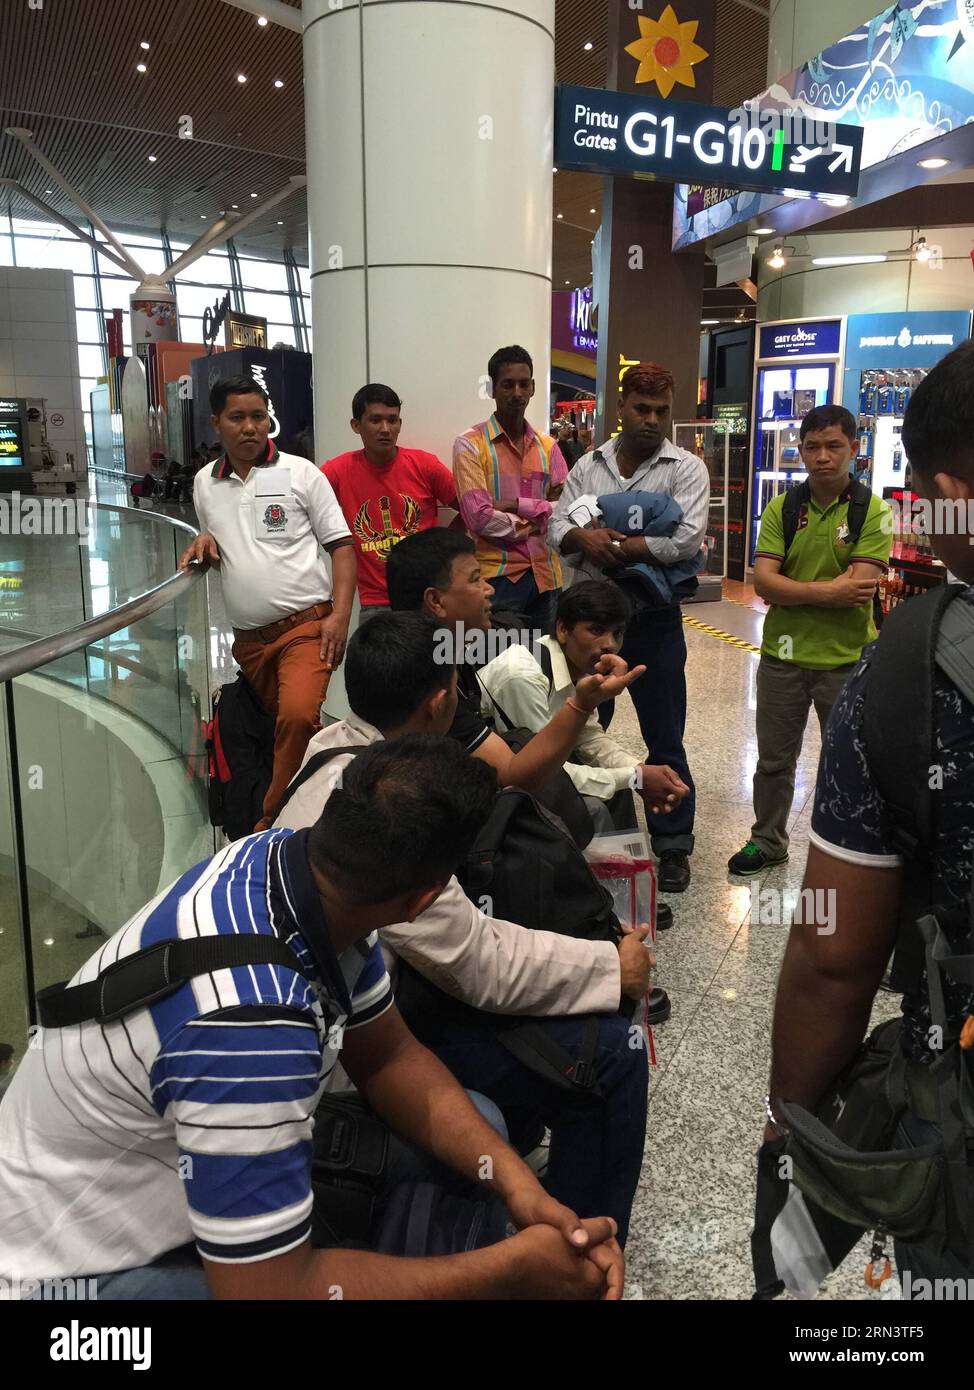 (150426) -- KUALA LUMPUR, le 26 avril 2015 -- des passagers népalais attendent un vol de retour au Népal à l'aéroport international de Kuala Lumpur à Kuala Lumpur, capitale de la Malaisie, le 26 avril 2015. Un total de 2 152 personnes ont été tuées et environ 5 000 autres ont été inhumées dans un puissant tremblement de terre qui a frappé le Népal samedi midi, a déclaré dimanche le porte-parole de la police nationale Kamal Singh Bam. ) MALAISIE-KUALA LUMPUR-NÉPAL-EARTHQUAKE-PASSENGERS QinxQing PUBLICATIONxNOTxINxCHN Kuala Lumpur avril 26 2015 des passagers népalais attendent un vol de retour au Népal À l'aéroport international de Kuala Lumpur à Kuala Lumpur Banque D'Images